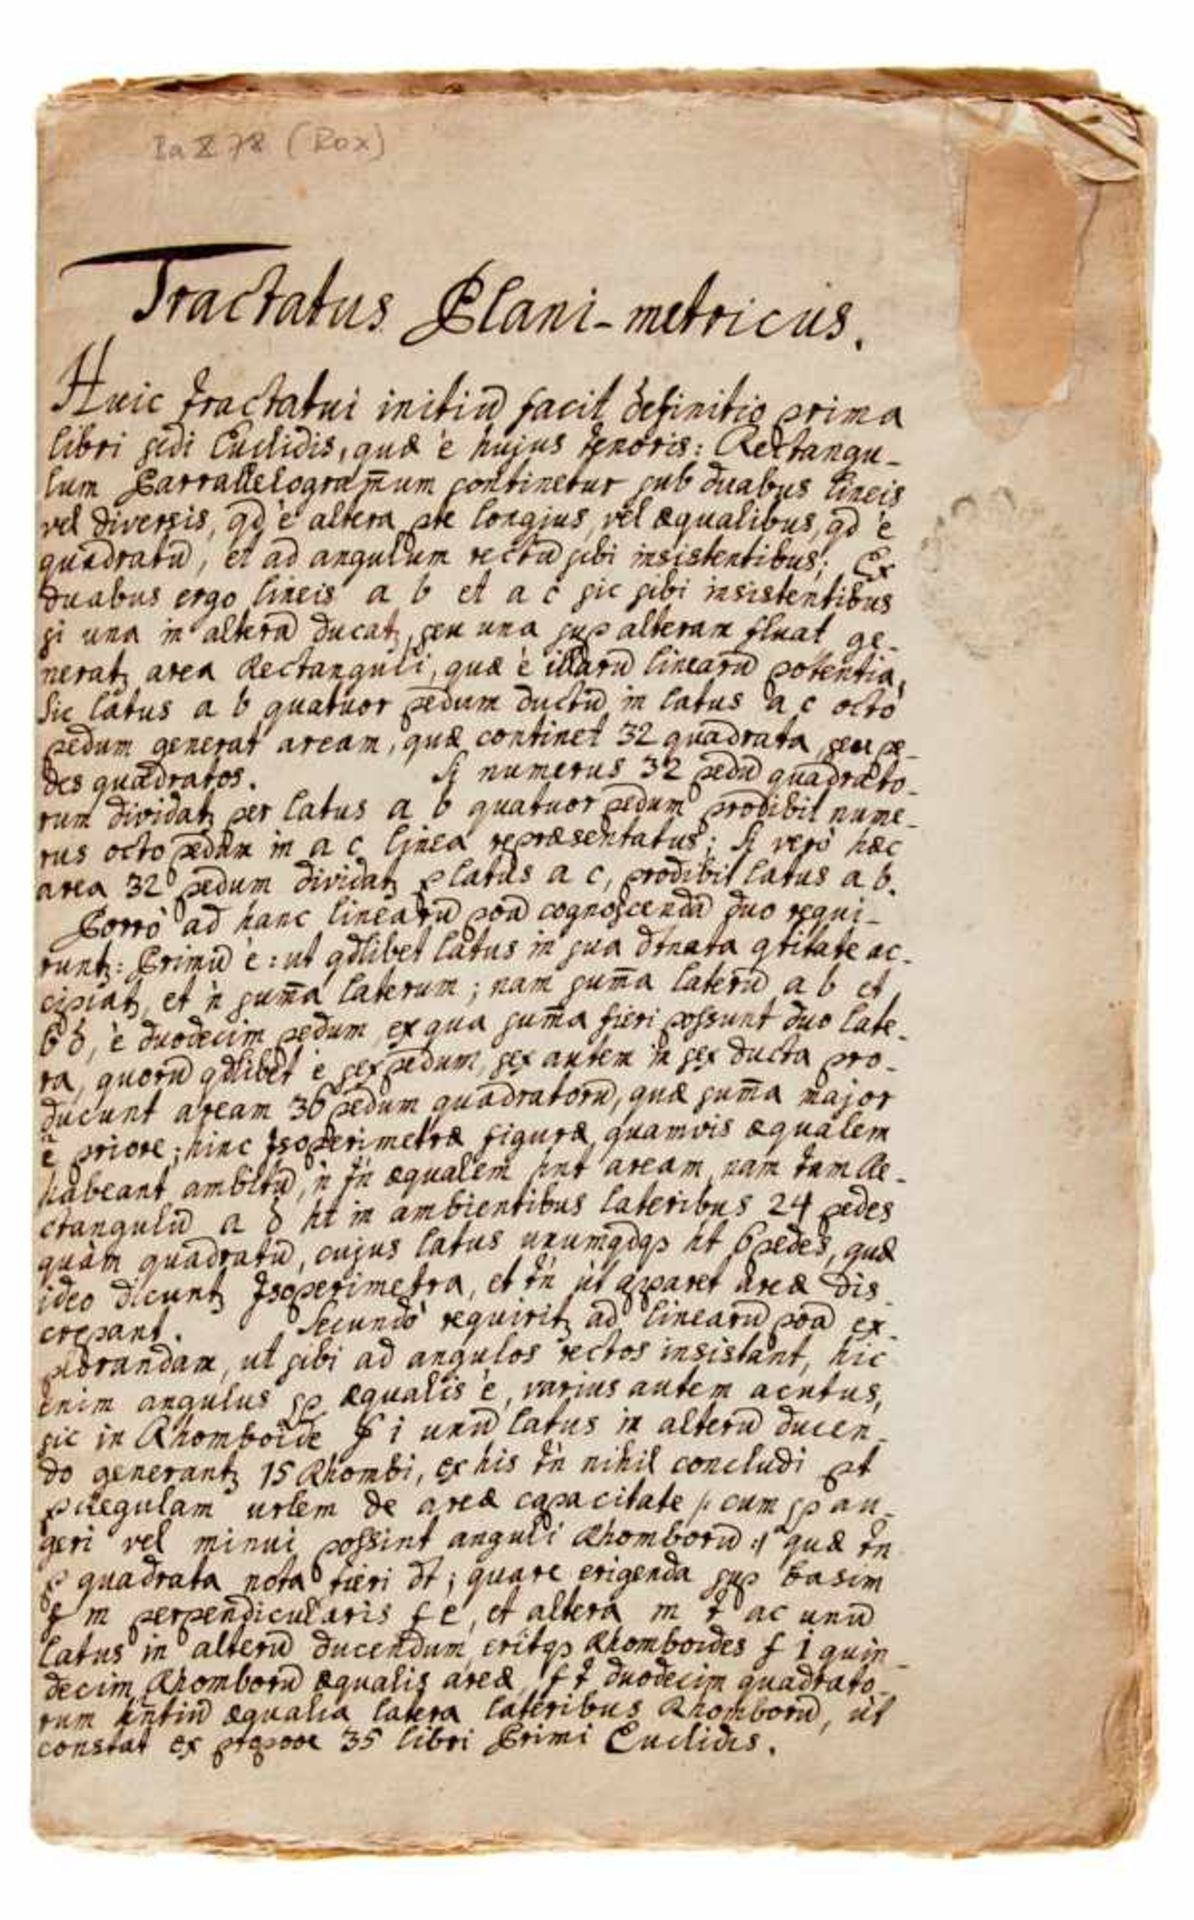 Feldmesskunst - Tractatus Plani-metricus.(Kopftitel). Lateinische Handschrift auf Papier. Wohl